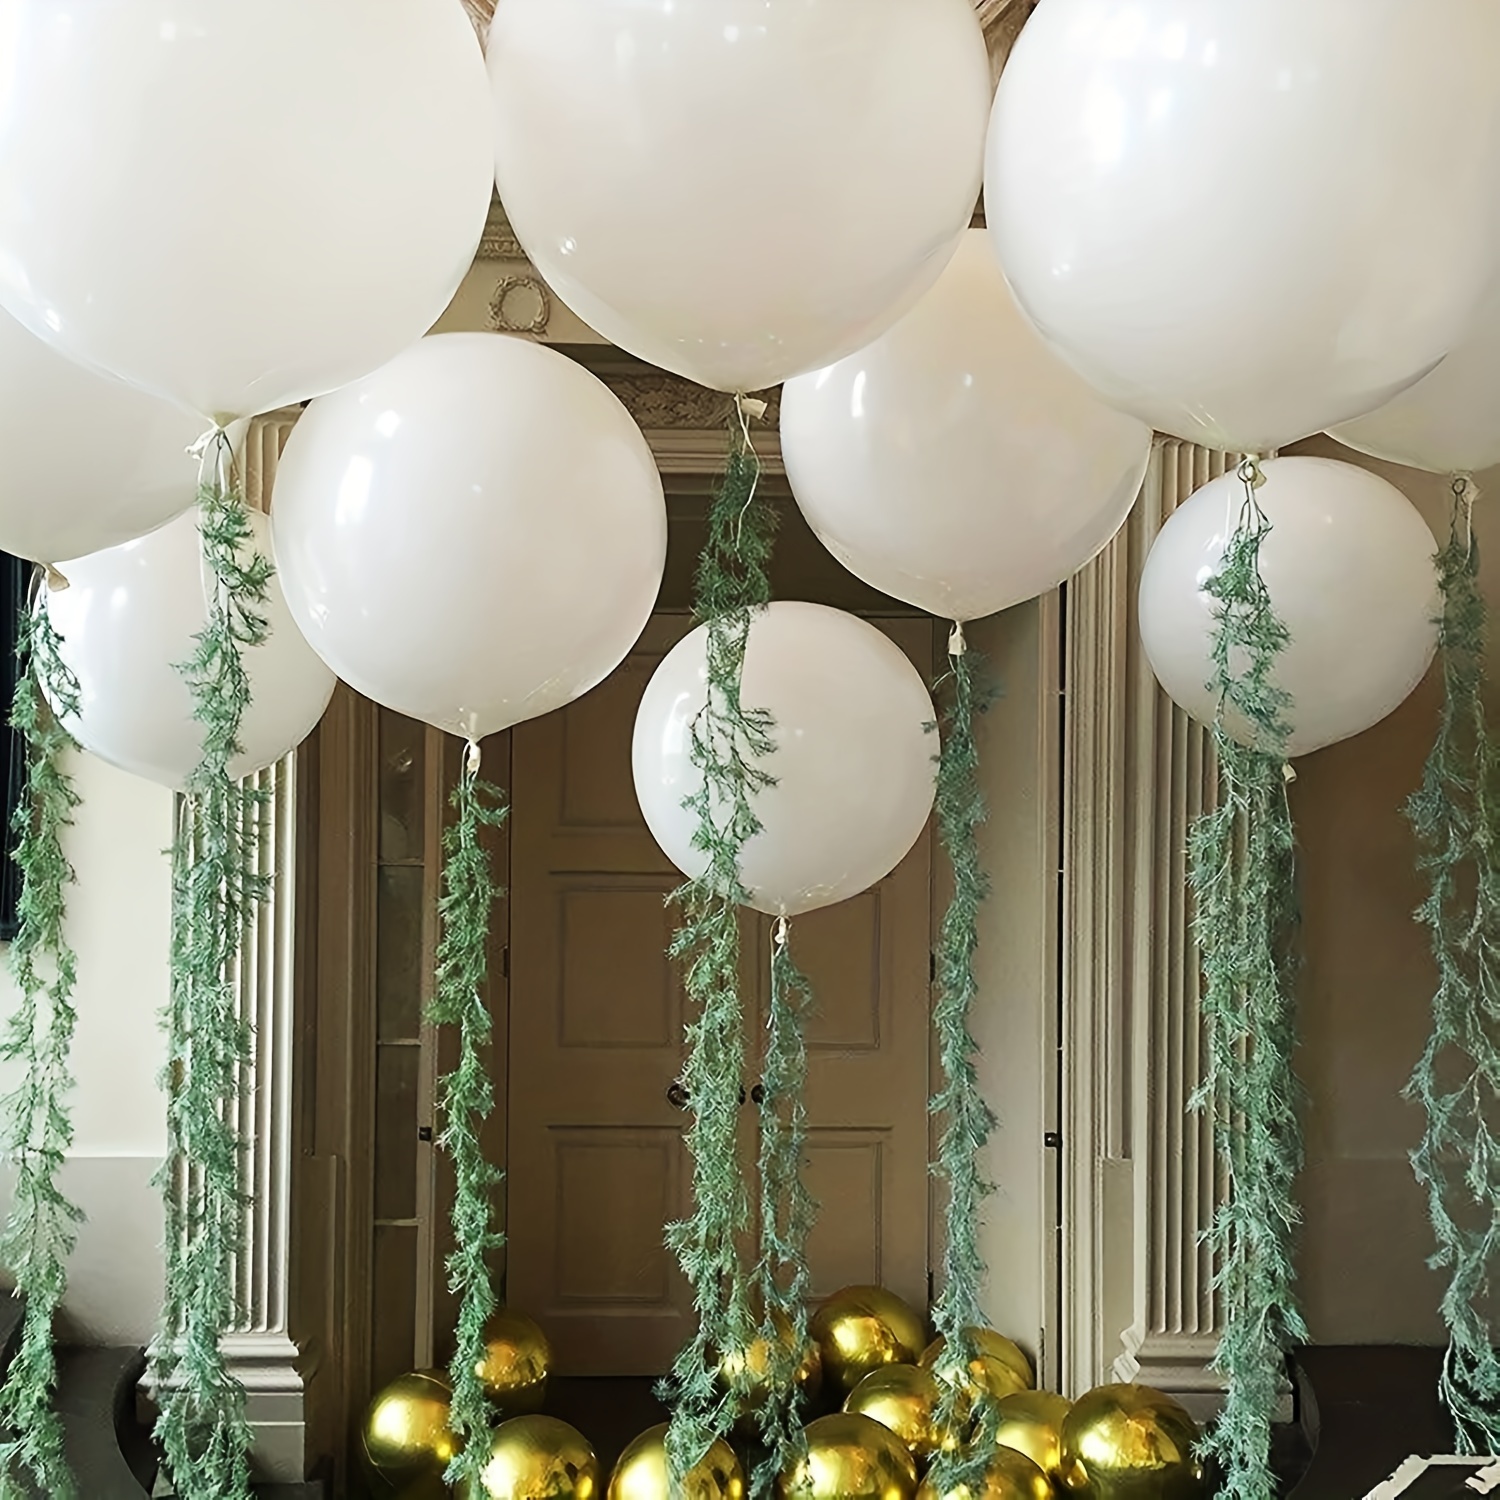  Globos blancos de látex para fiesta, paquete de 60 globos  blancos mate de 12 pulgadas, globos redondos de helio para temática blanca,  boda, fiesta de cumpleaños, decoración de telón de fondo, 